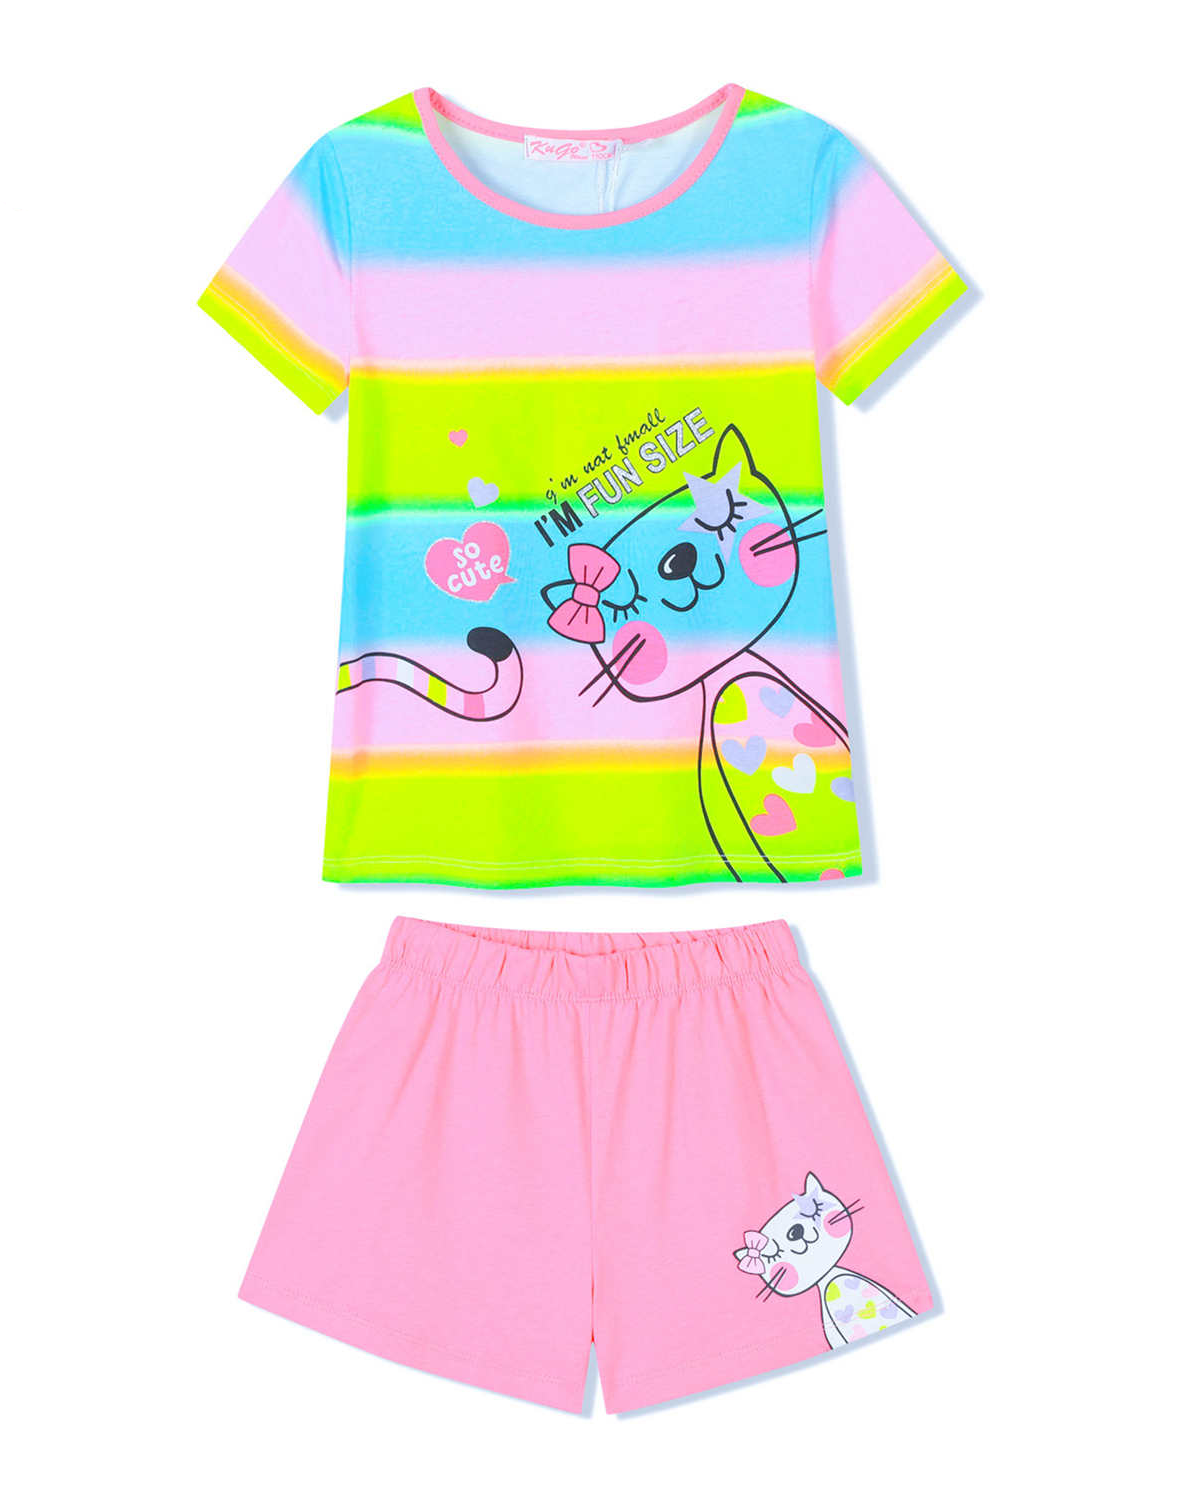 Dívčí pyžamo - KUGO SH3515, mix barev / světle růžové kraťasy Barva: Mix barev, Velikost: 98